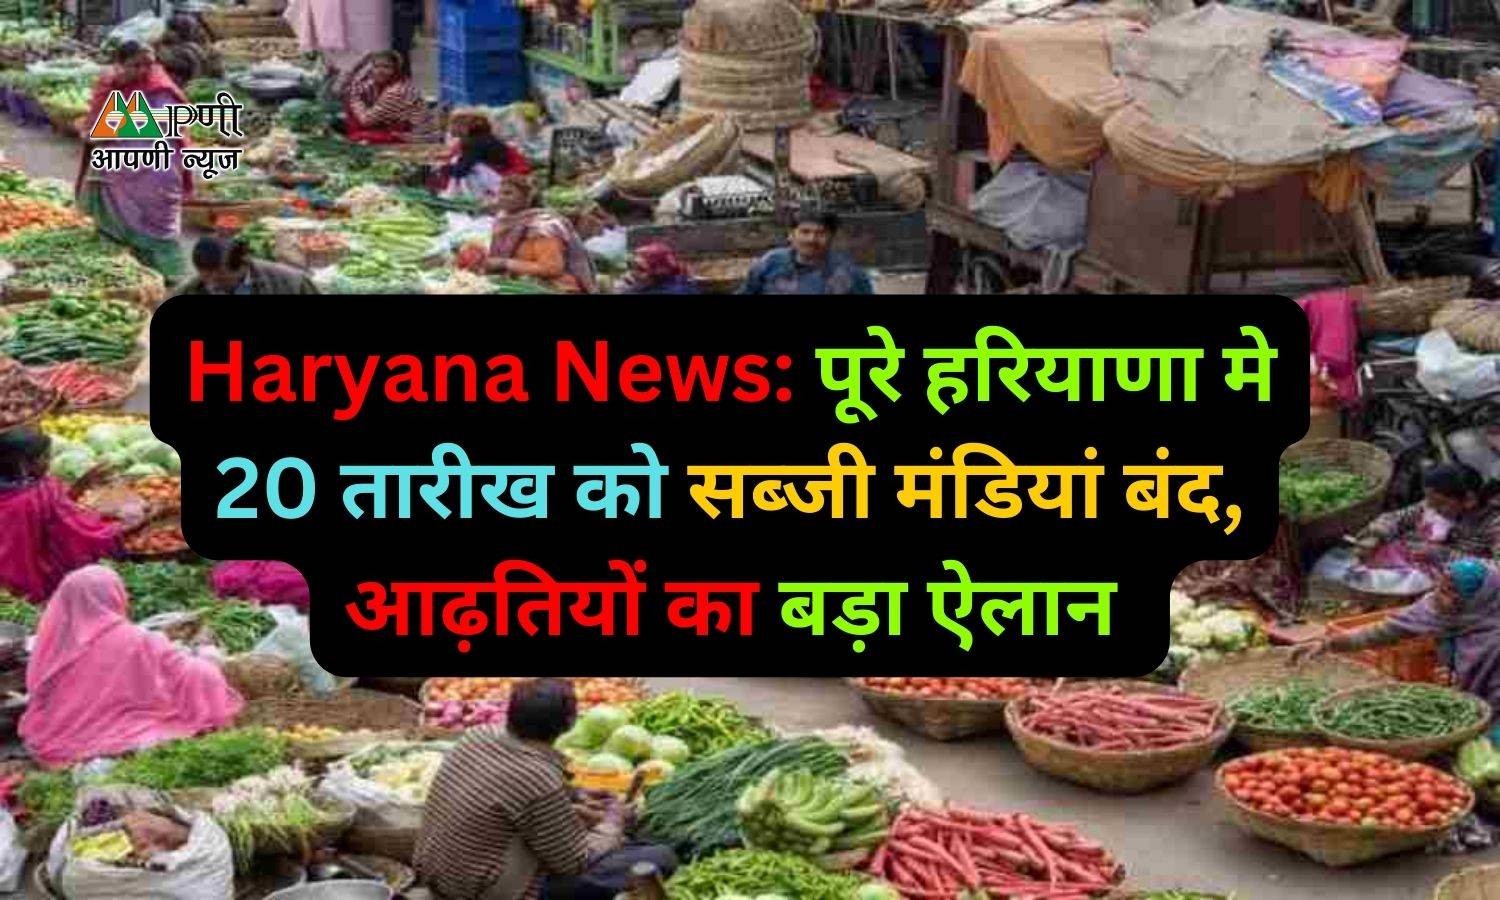 Haryana News: पूरे हरियाणा मे 20 तारीख को सब्जी मंडियां बंद, आढ़तियों का बड़ा ऐलान